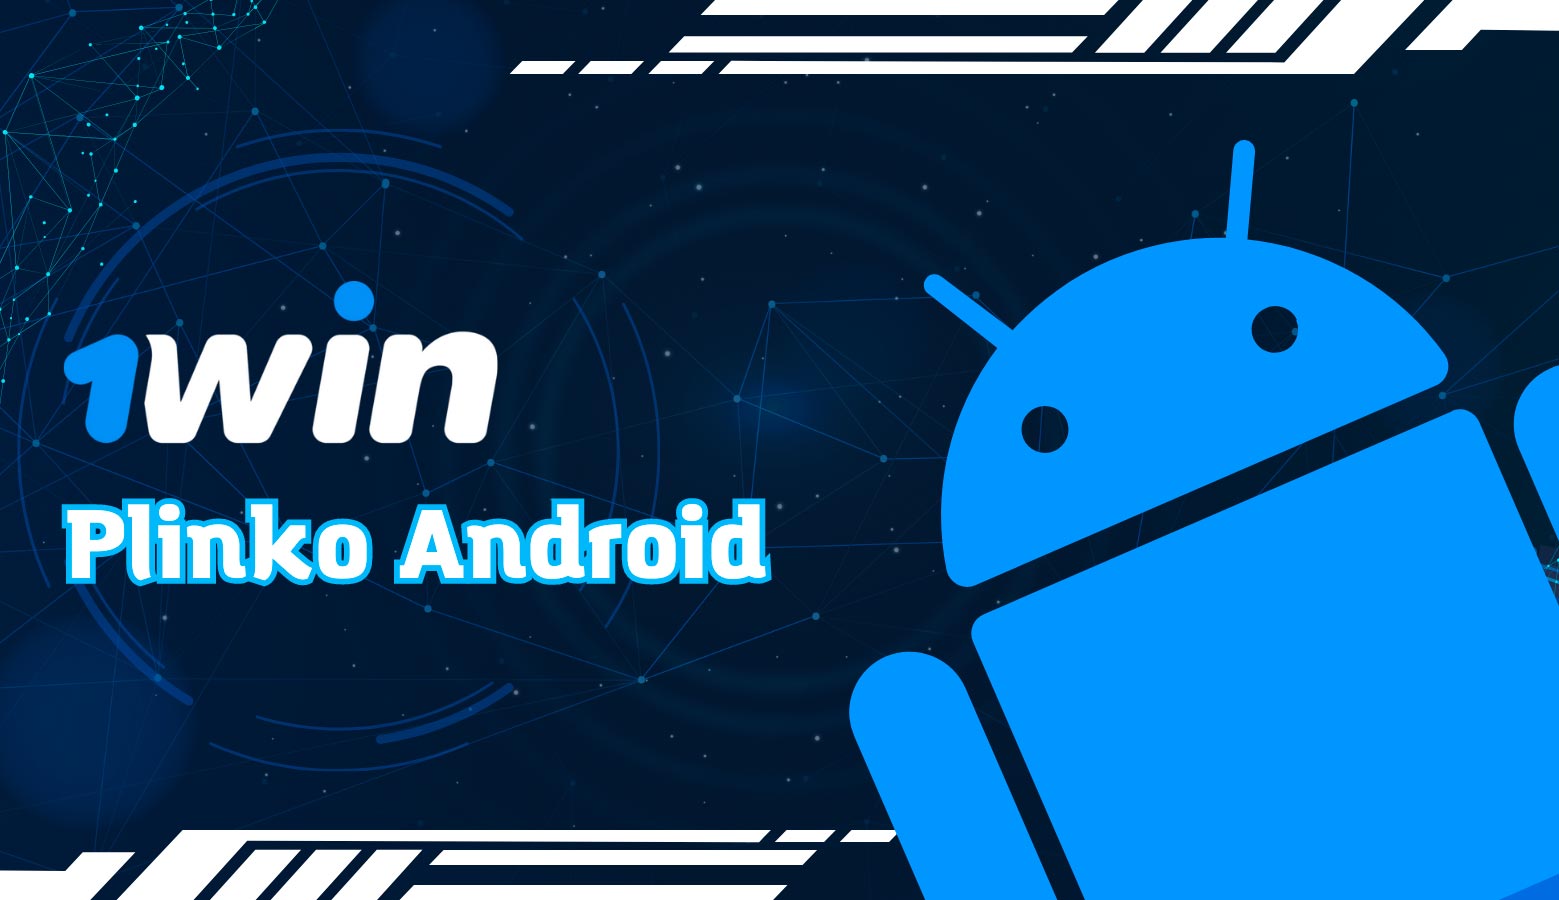 1win Plinko Android